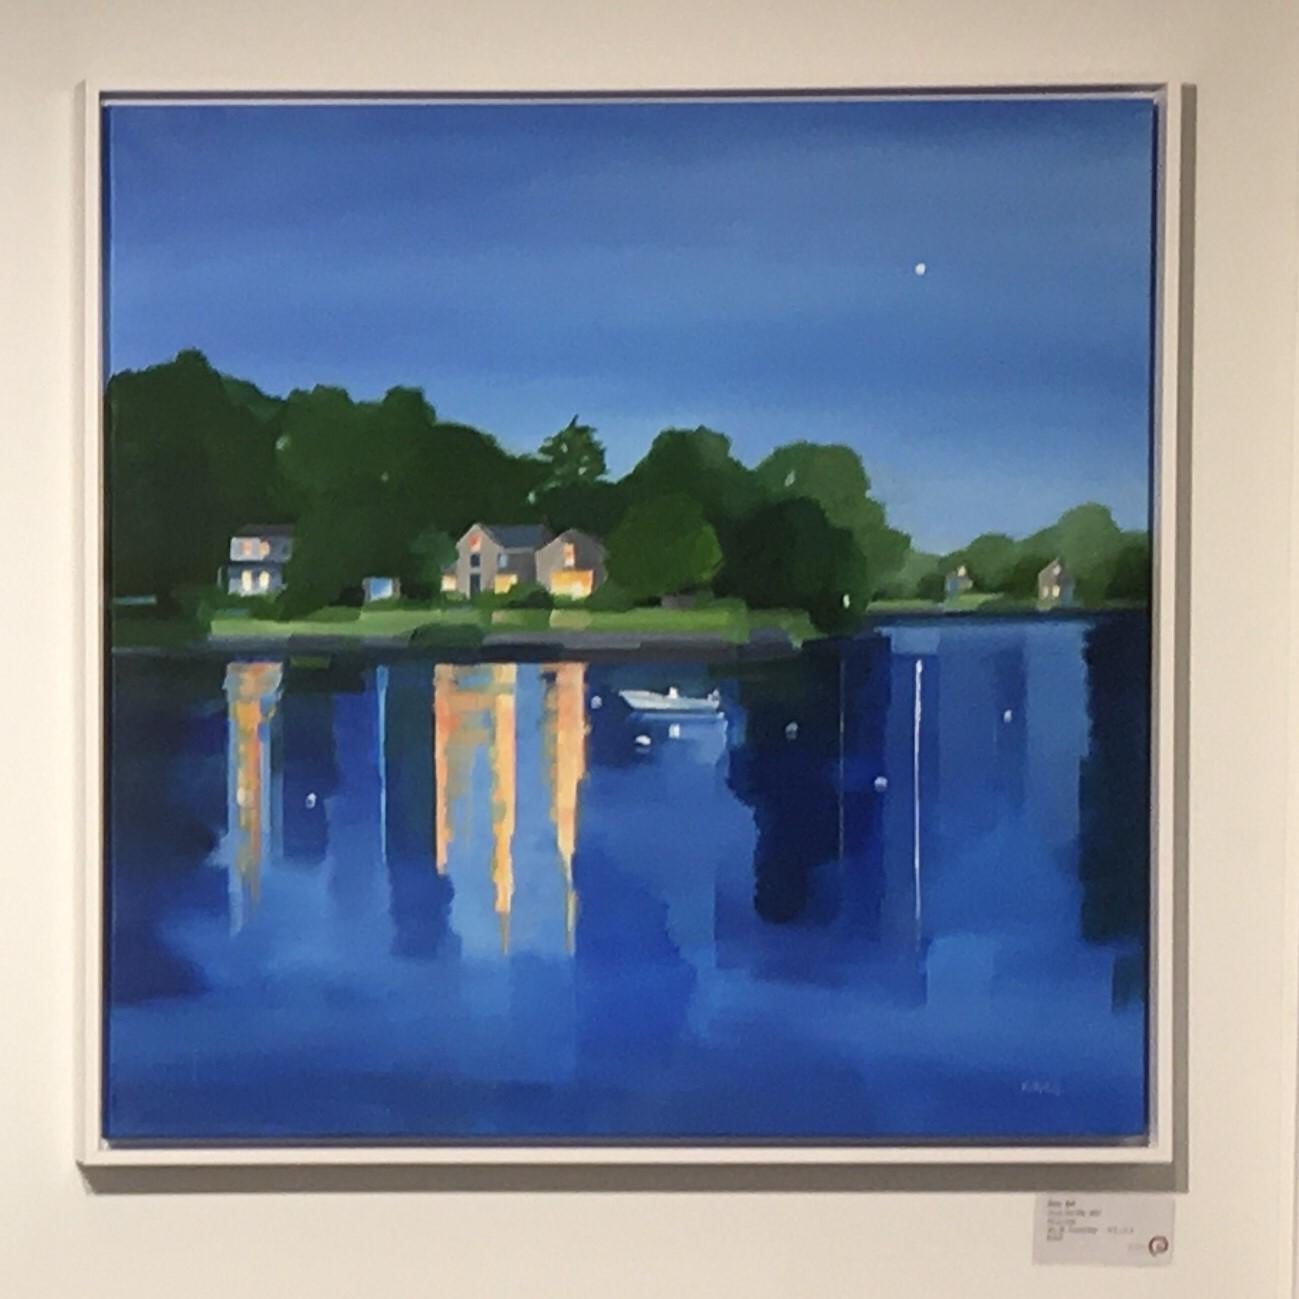 Across Five Mile, paysage, reflets, bleu, eau, paysage, peinture - Painting de Betty Ball